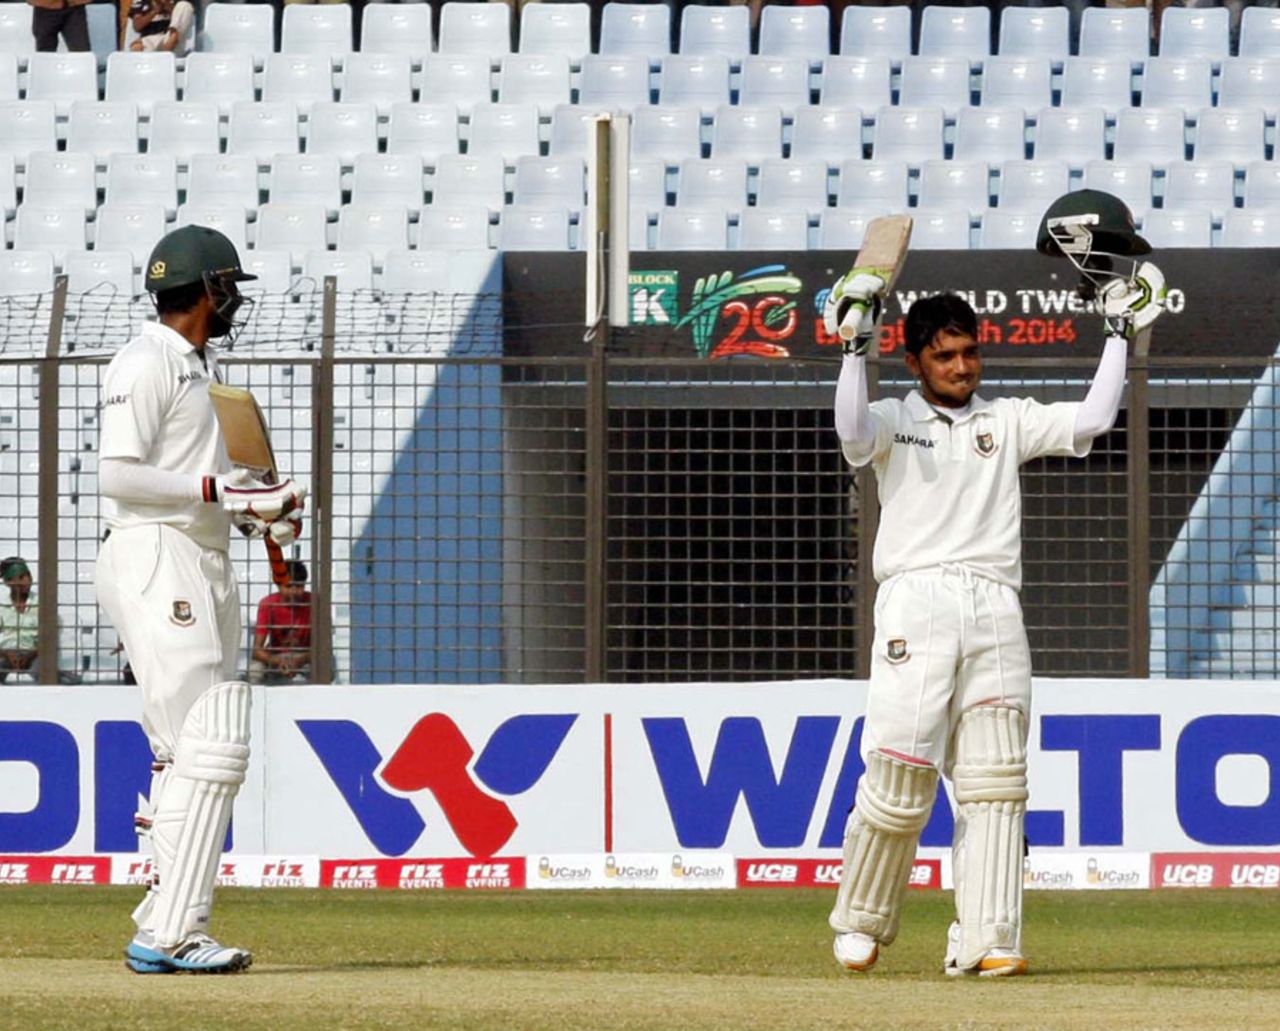 Mominul Haque raises his bat after scoring a century, Bangladesh v Zimbabwe, 3rd Test, Chittagong, 4th day, November 15, 2014